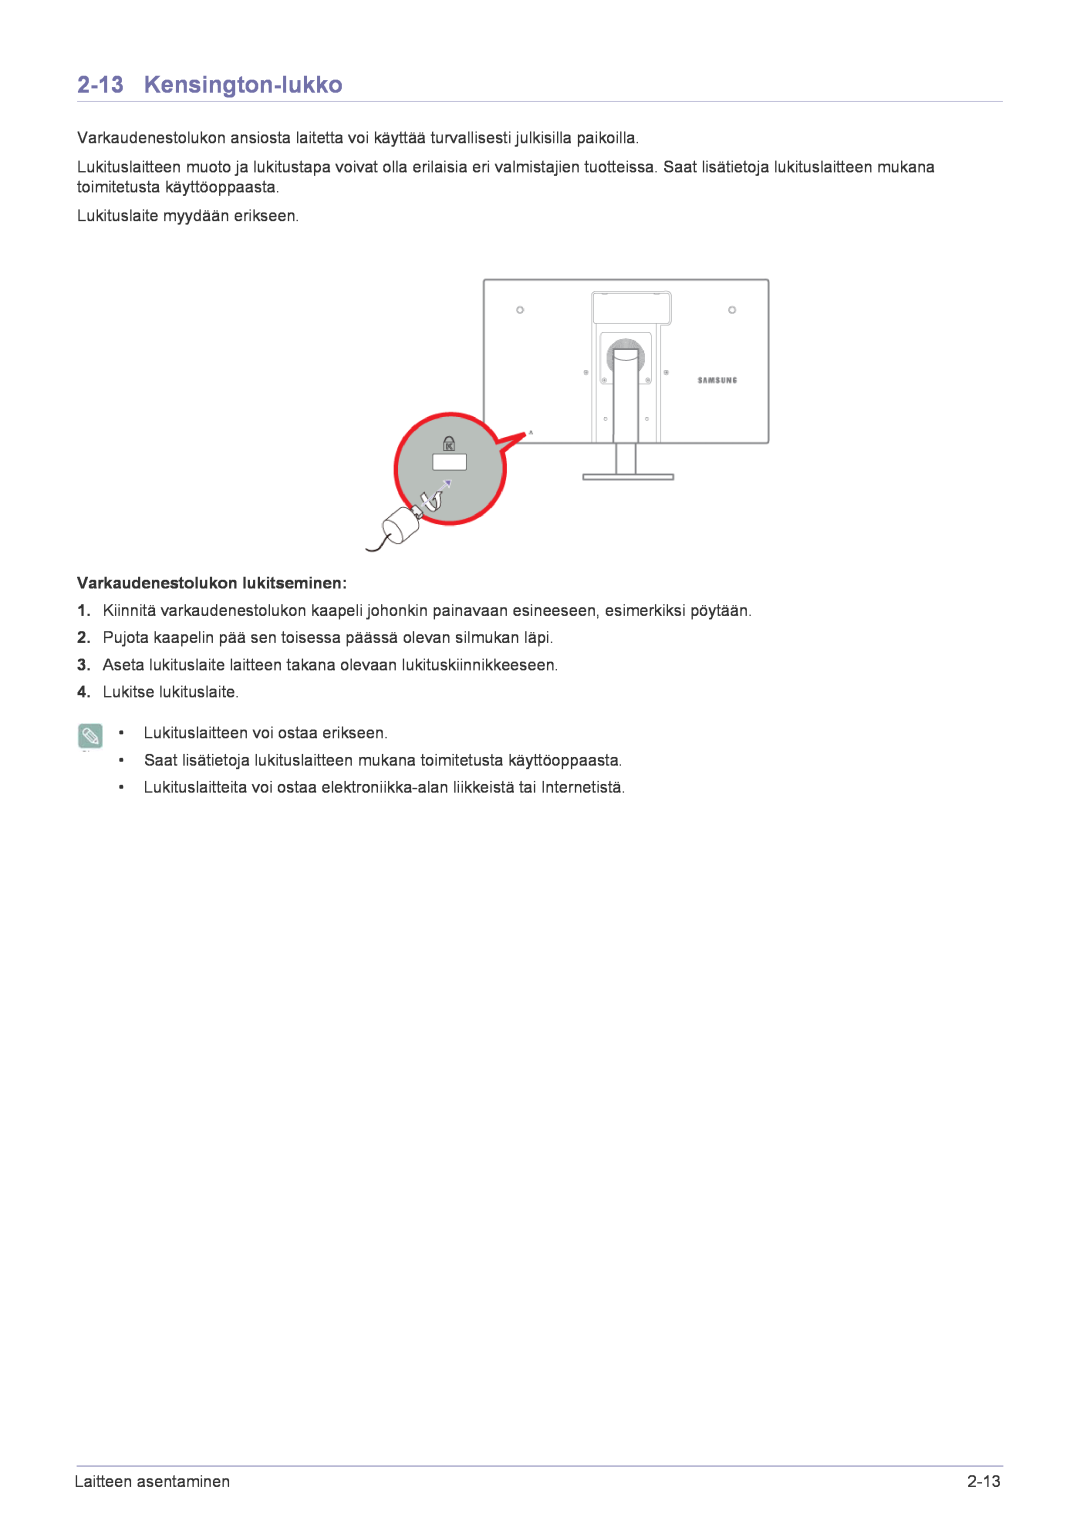 Samsung LF22NPBHBNP/EN manual Kensington-lukko, Varkaudenestolukon lukitseminen 